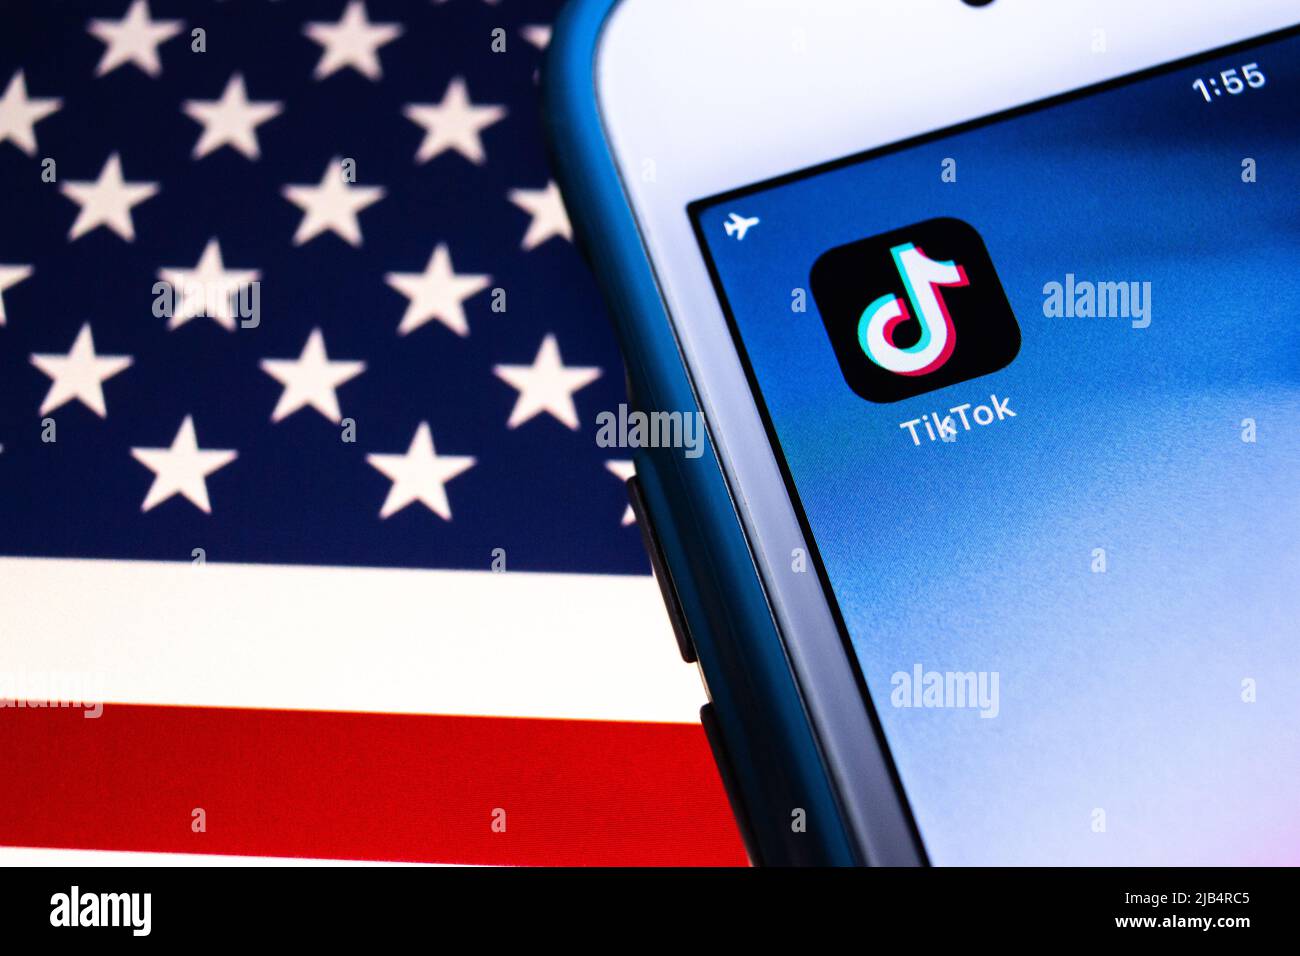 TikTok, ein chinesisches Video-Sharing SNS von Bytedance in Peking, auf dem iPhone unter US-Flagge. Präsident Trump unterzeichnet eine Exekutivordnung, die TikTok im Wesentlichen verbietet Stockfoto